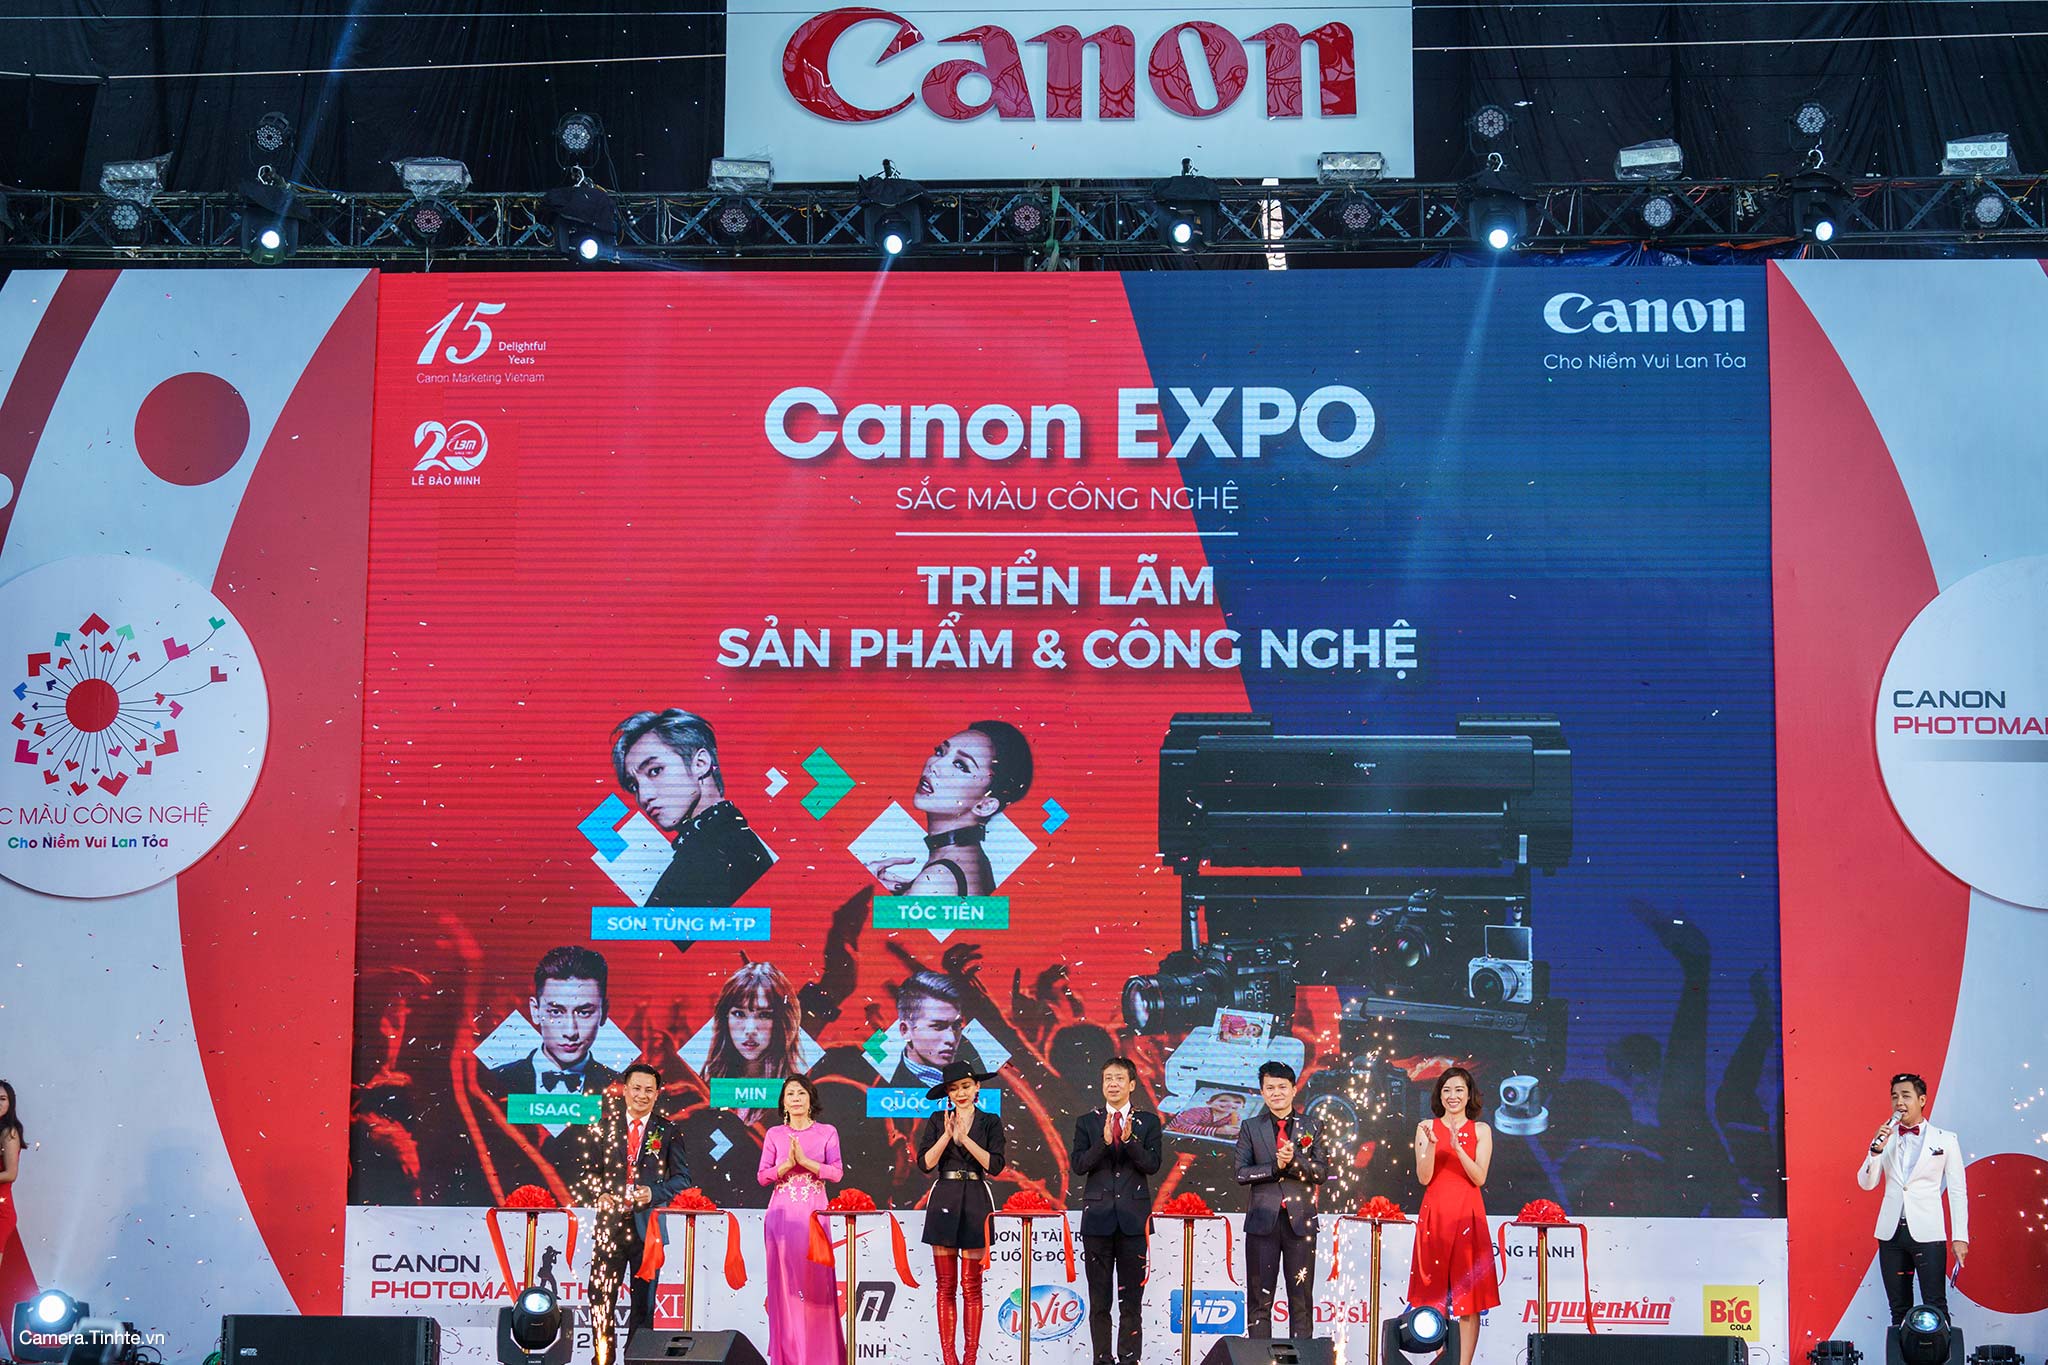 Camera-Tinh-Te_Canon-Expo-2017_3.jpg